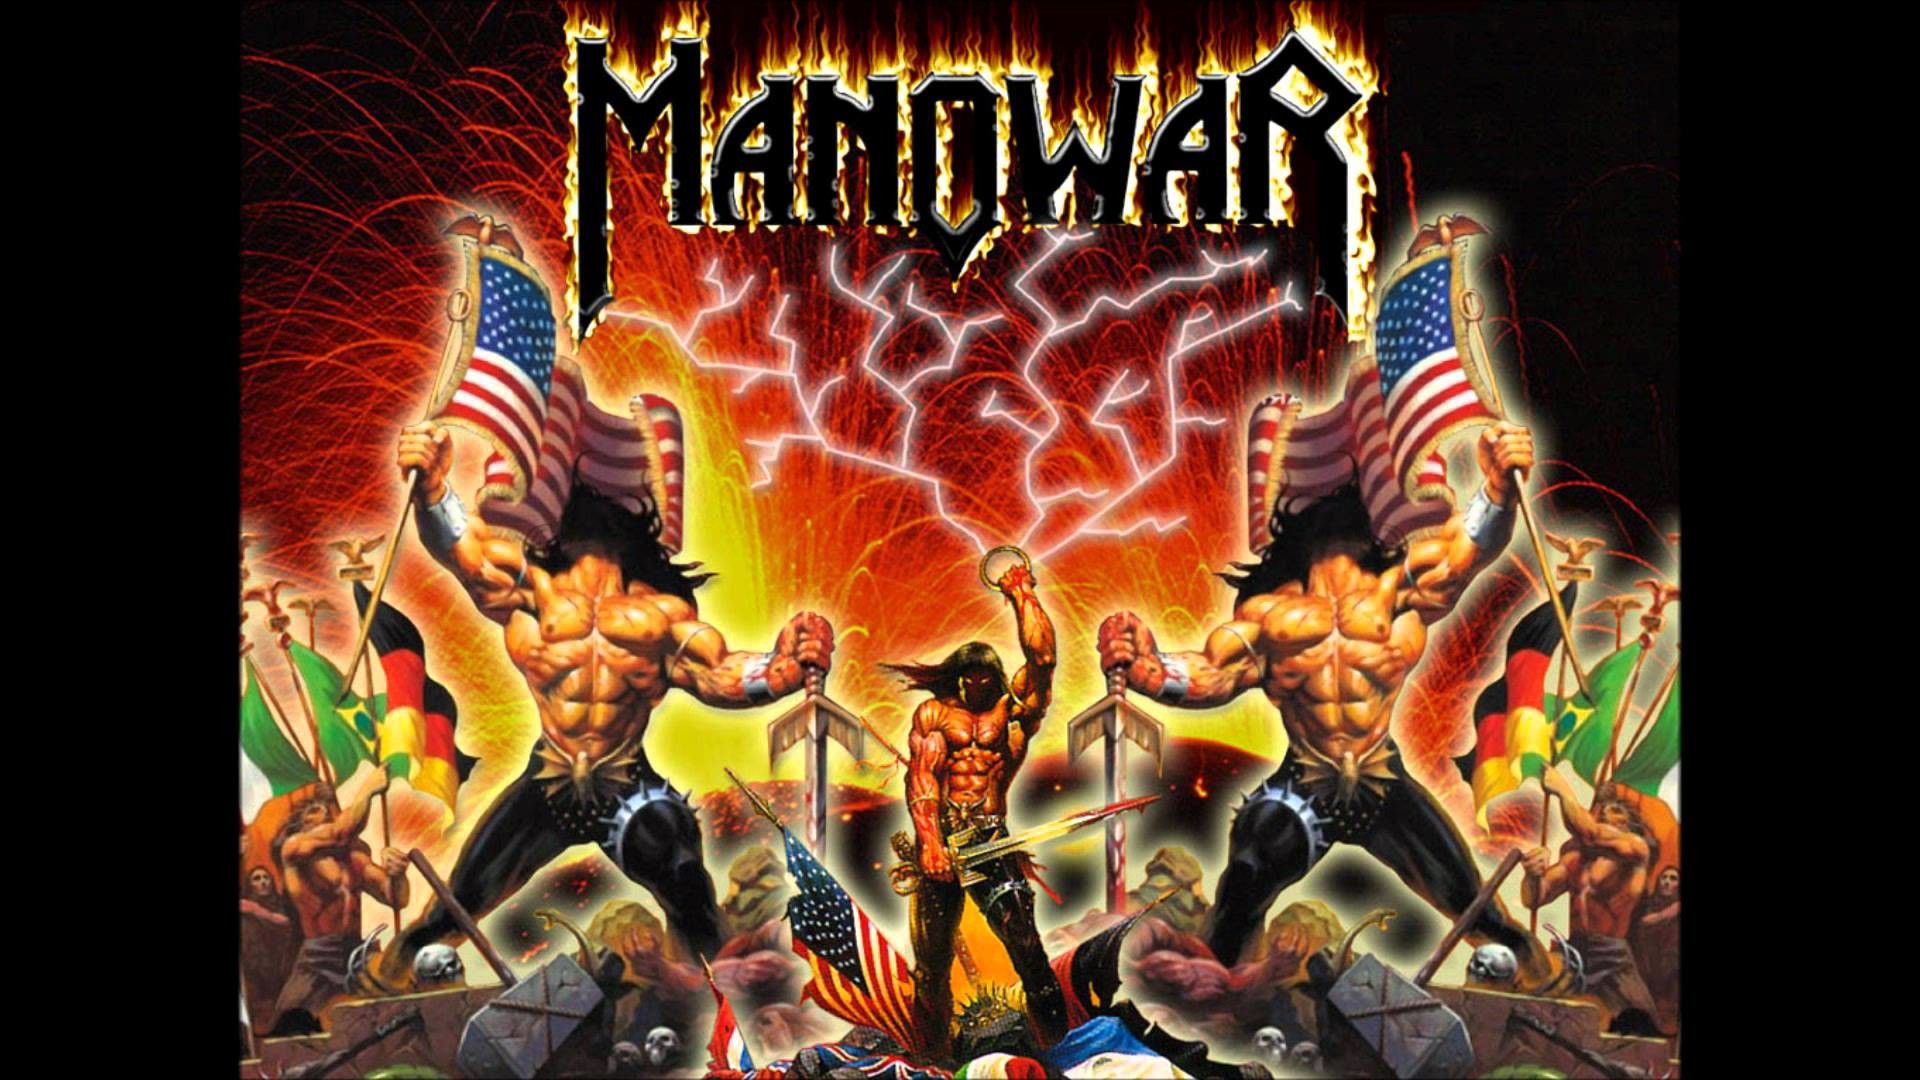 Manowar united warriors. Мановар фото группы. Группа Manowar 2021. Постеры группы Manowar. Обложки дисков Manowar.